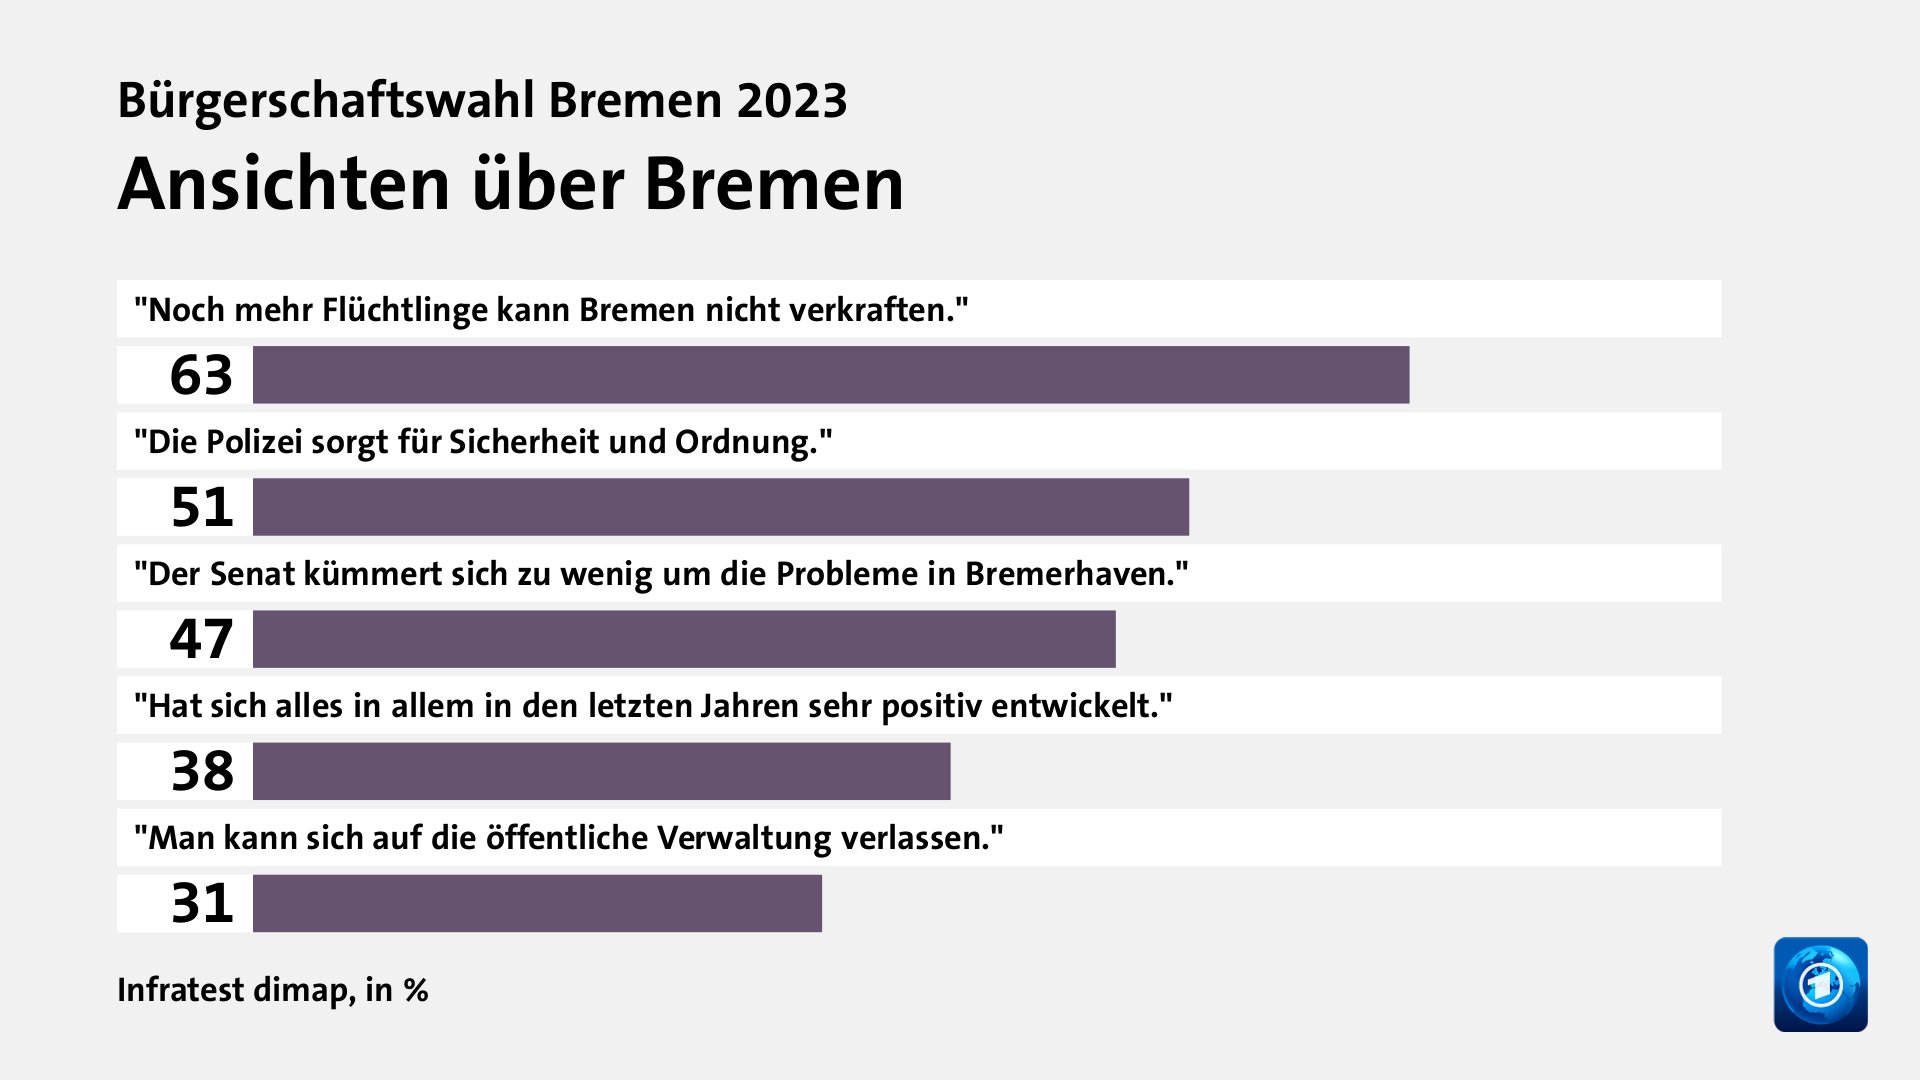 Ansichten über Bremen, in %: 